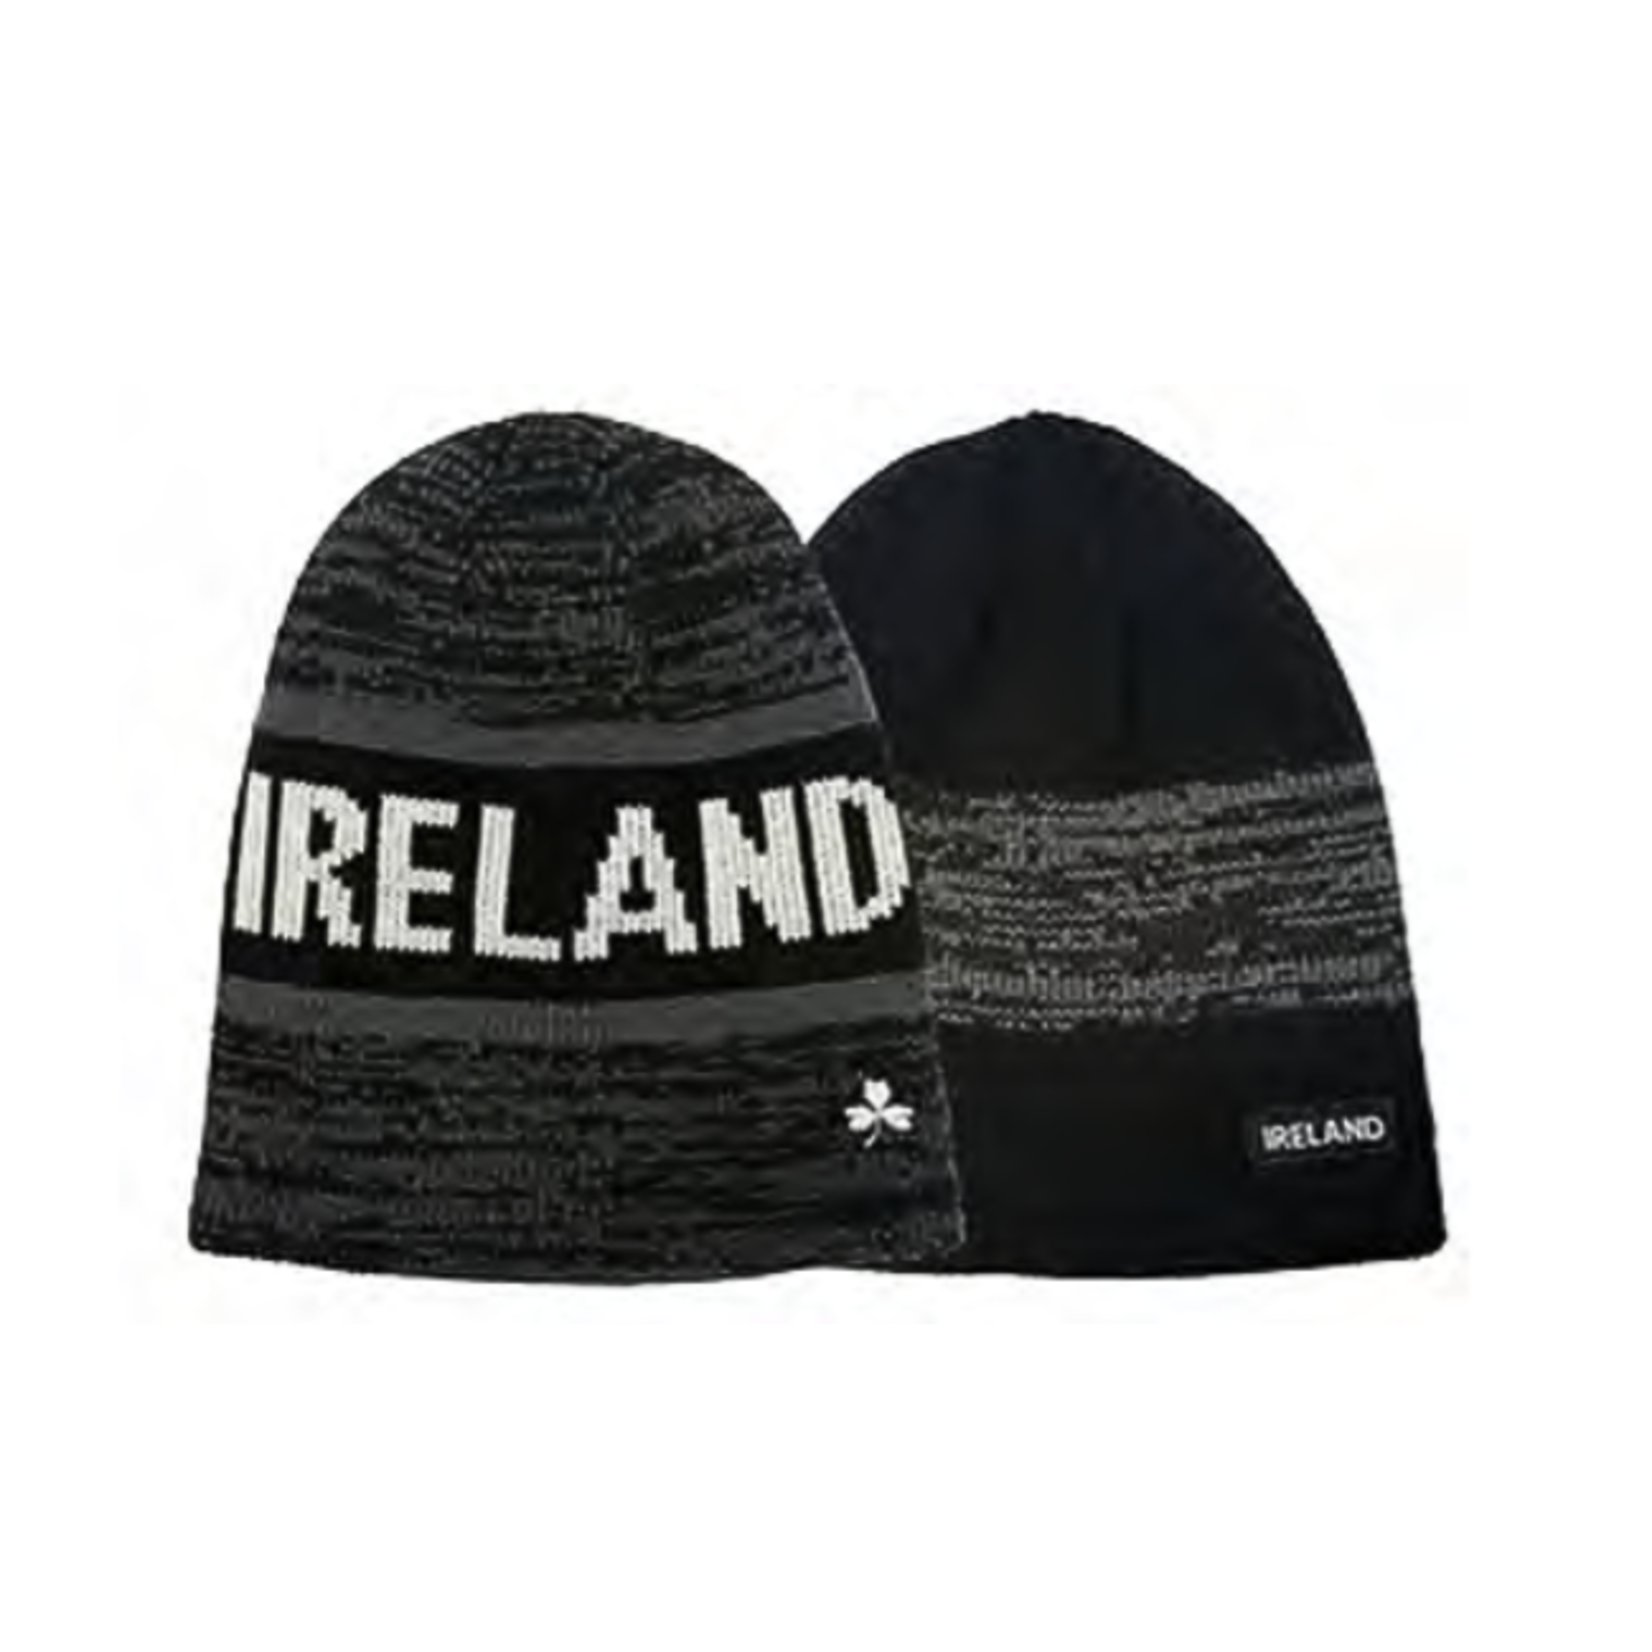 Lansdowne Black + Grey Reversible "Ireland" Knit Hat